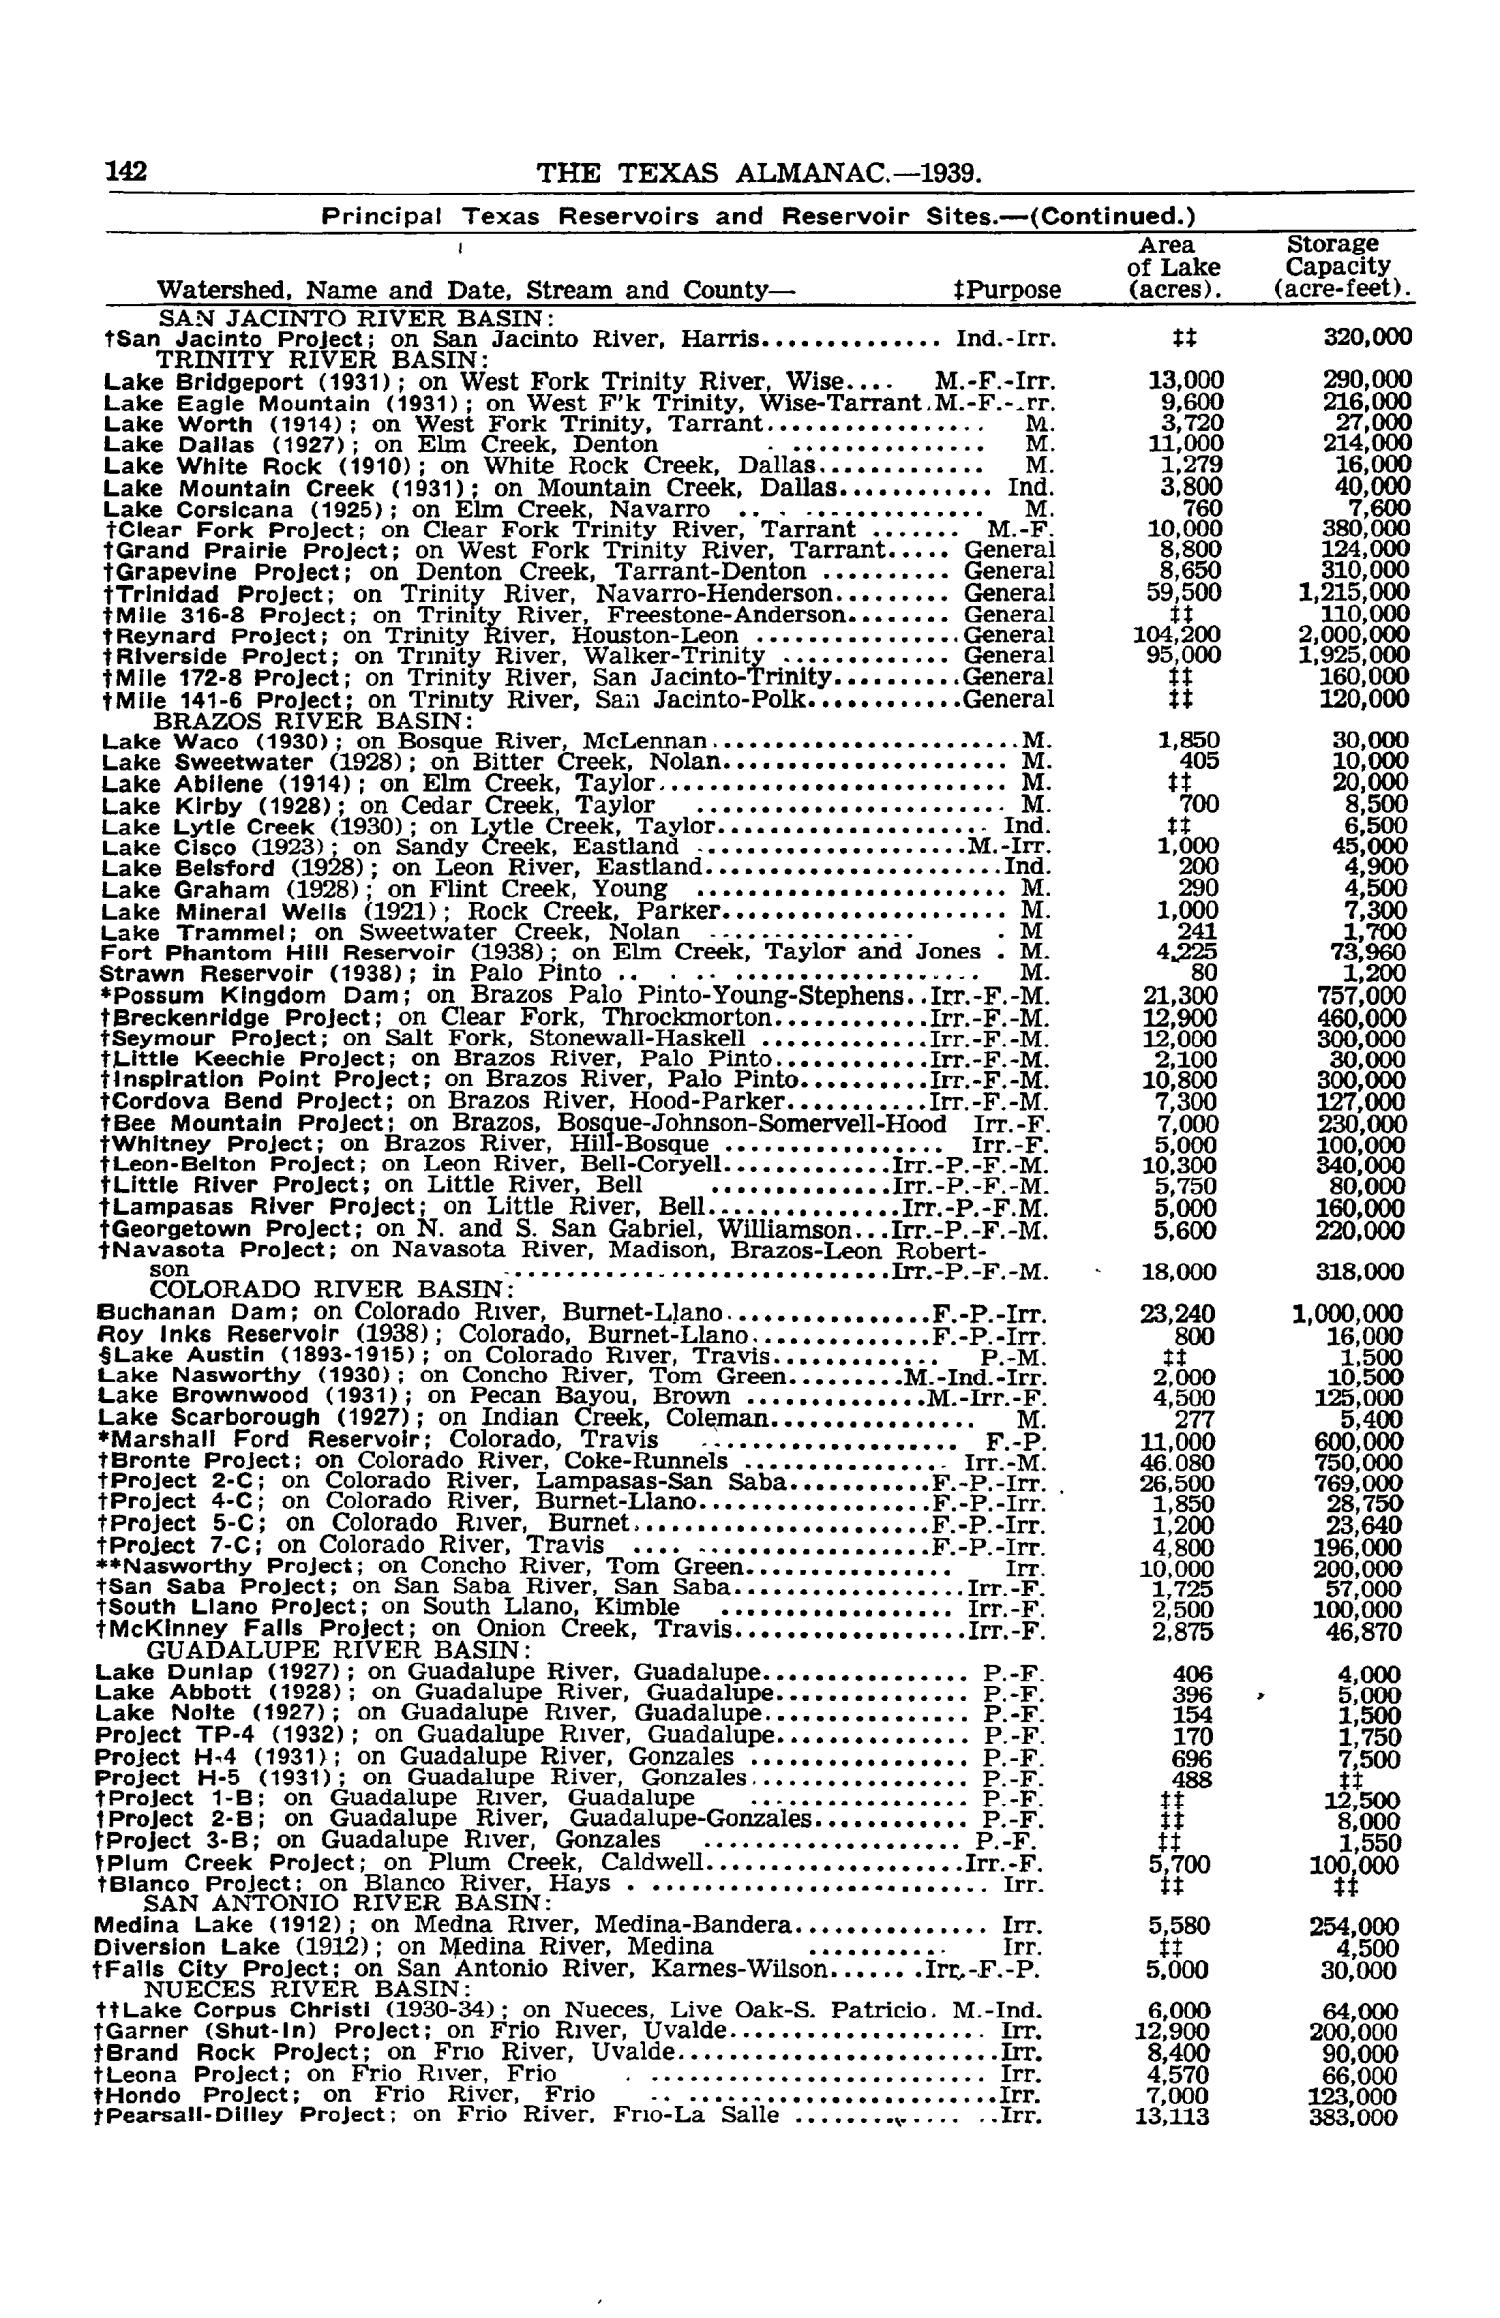 Texas Almanac, 1939-1940
                                                
                                                    142
                                                